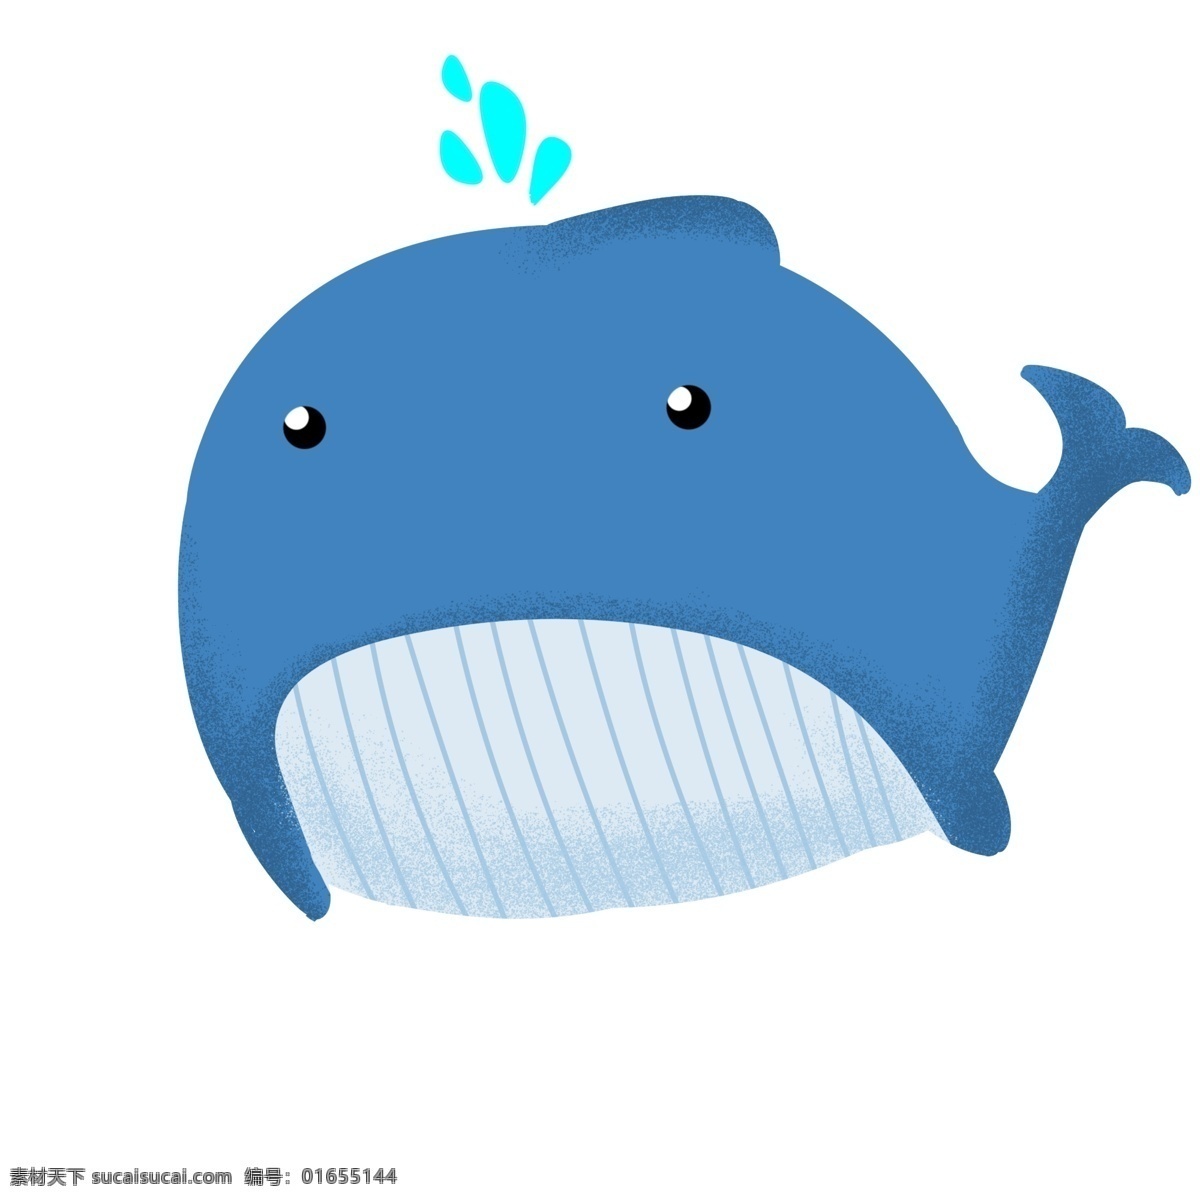 蓝色 可爱 大 鲸鱼 插画 蓝鲸 可爱的鲸鱼 大鲸鱼插画 喷水的鲸鱼 动物 蓝色的大鲸鱼 红色 条纹 斑纹 白色的肚皮